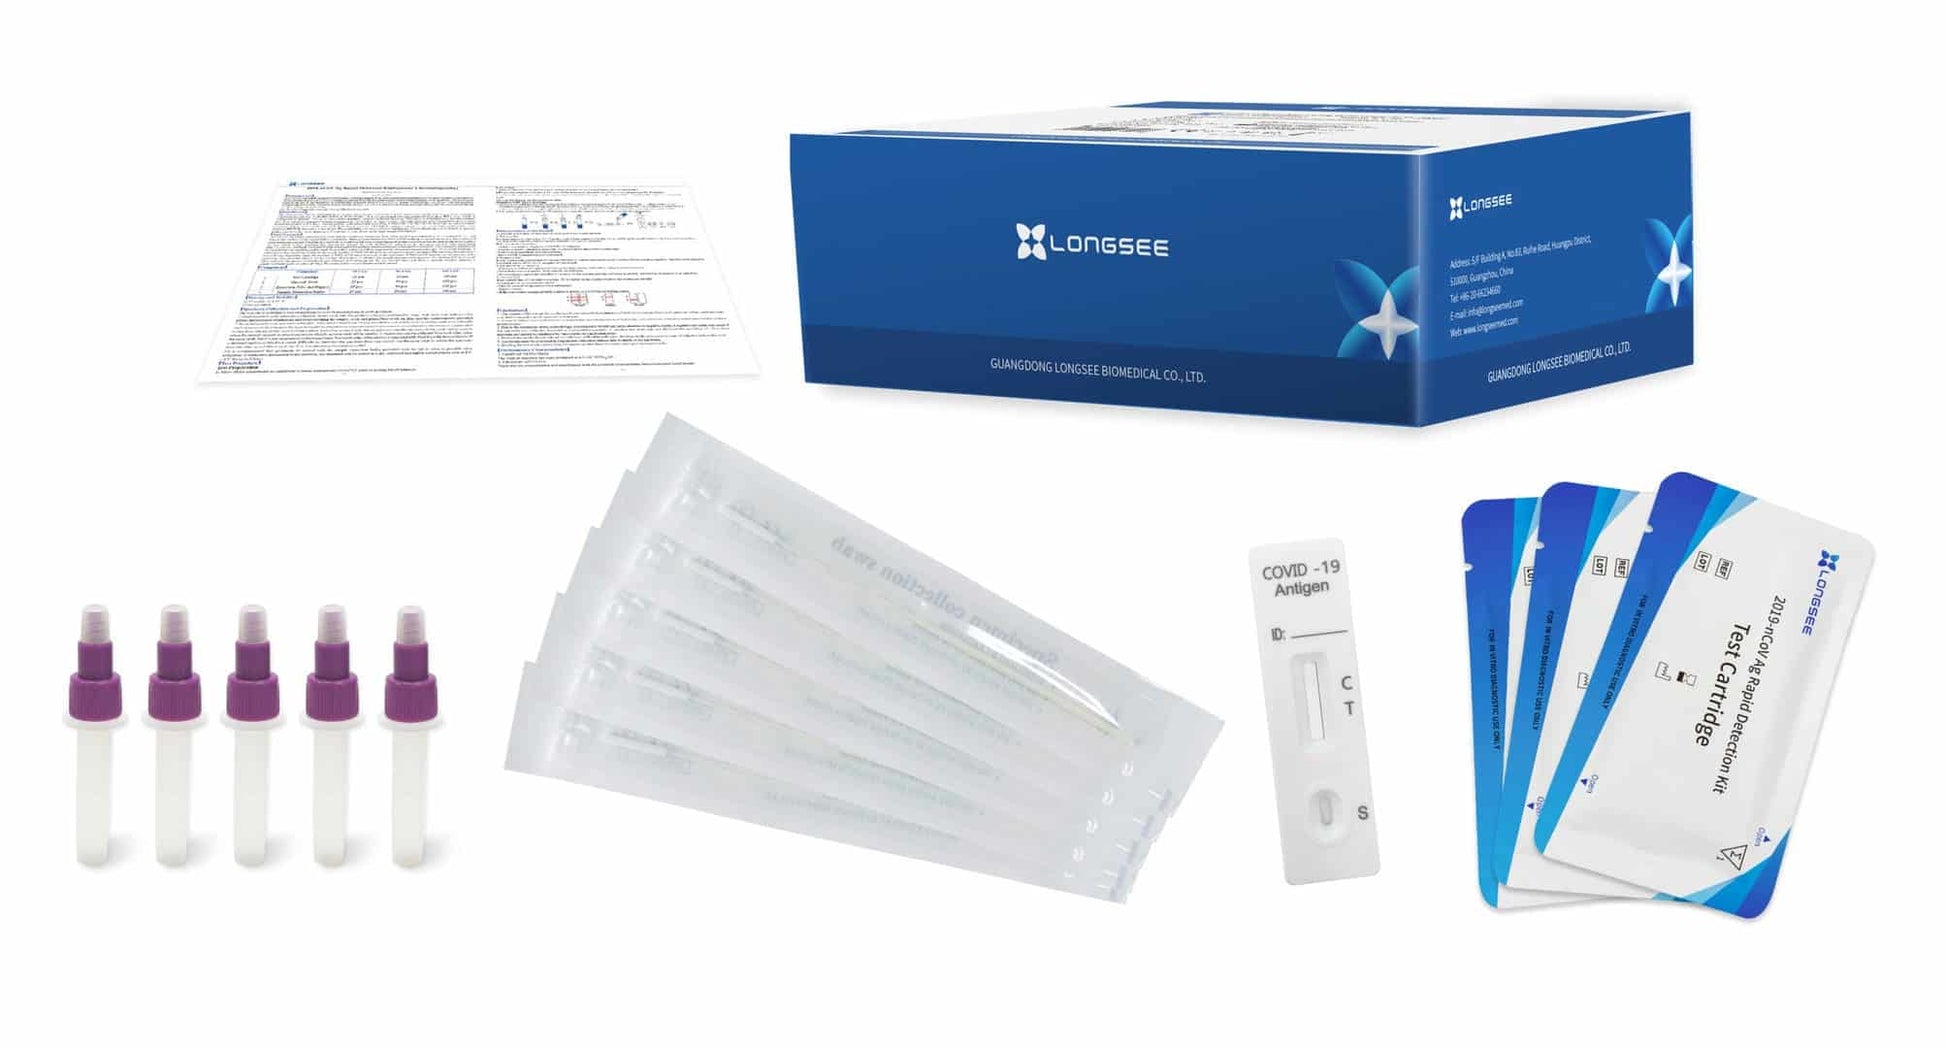 Ein komplettes Longsee Covid-19-Antigen-Schnelltestkit, einschließlich einer Schachtel mit der Aufschrift „Longsee“, Gebrauchsanweisungen, Testkassetten, Pufferröhrchen und sterilen Tupfern, isoliert auf weißem Hintergrund.